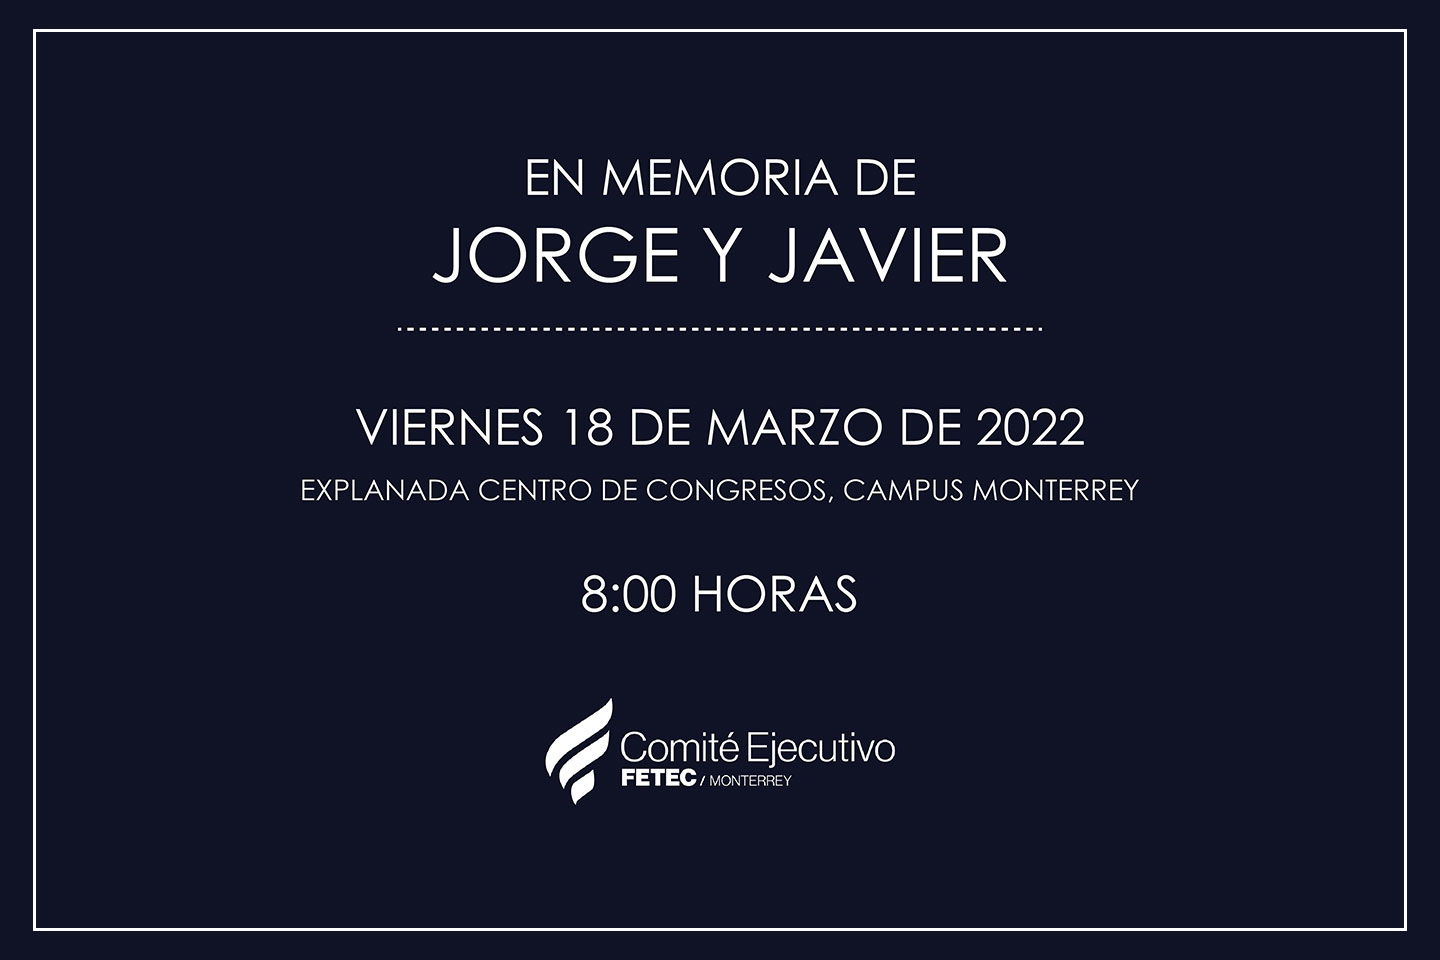 Invitación en Memoria de Jorge y Javier 2022